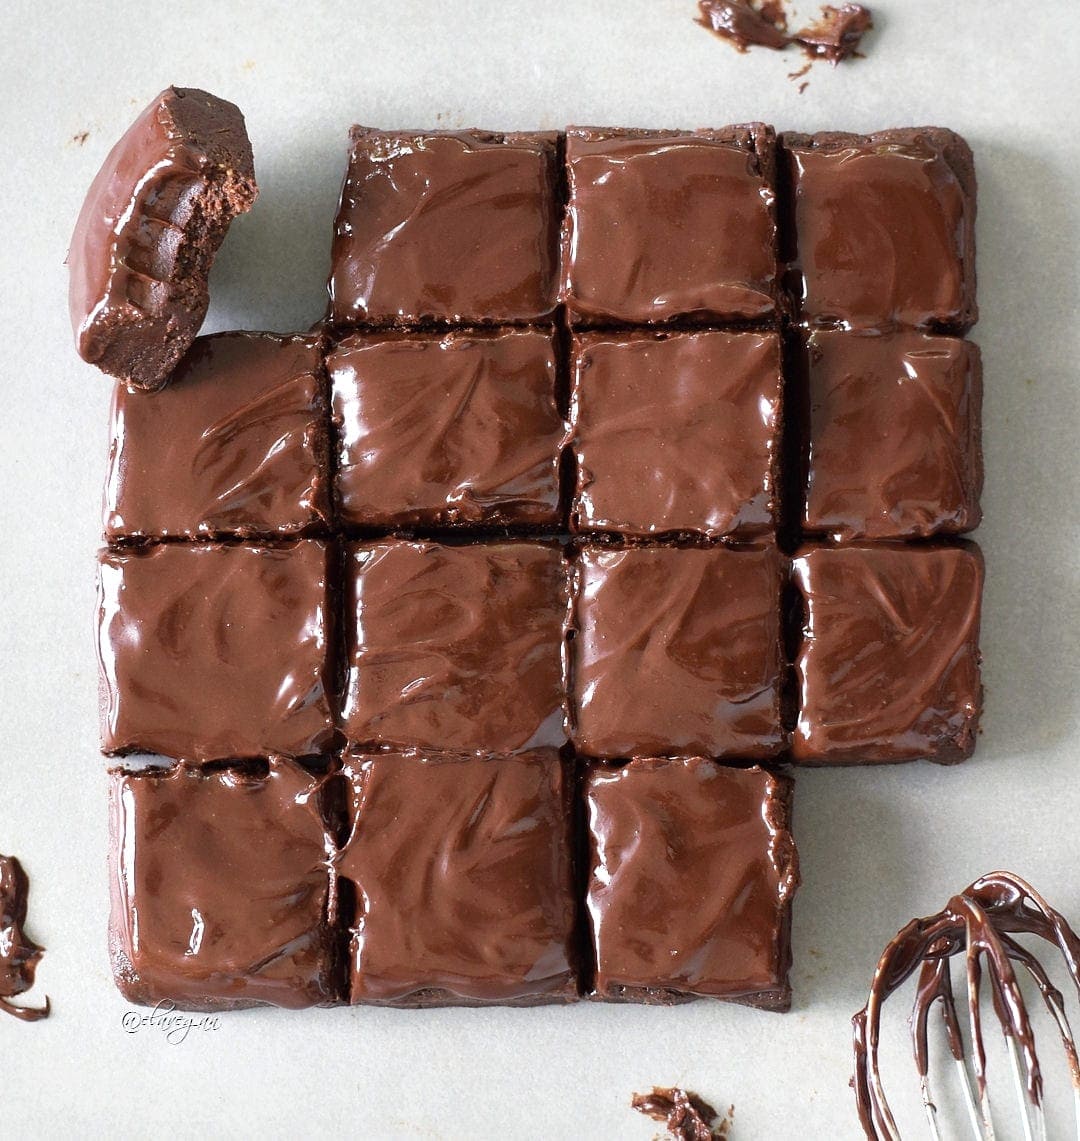 15 quadratische Rohkost-Brownies eine mit Bissspuren